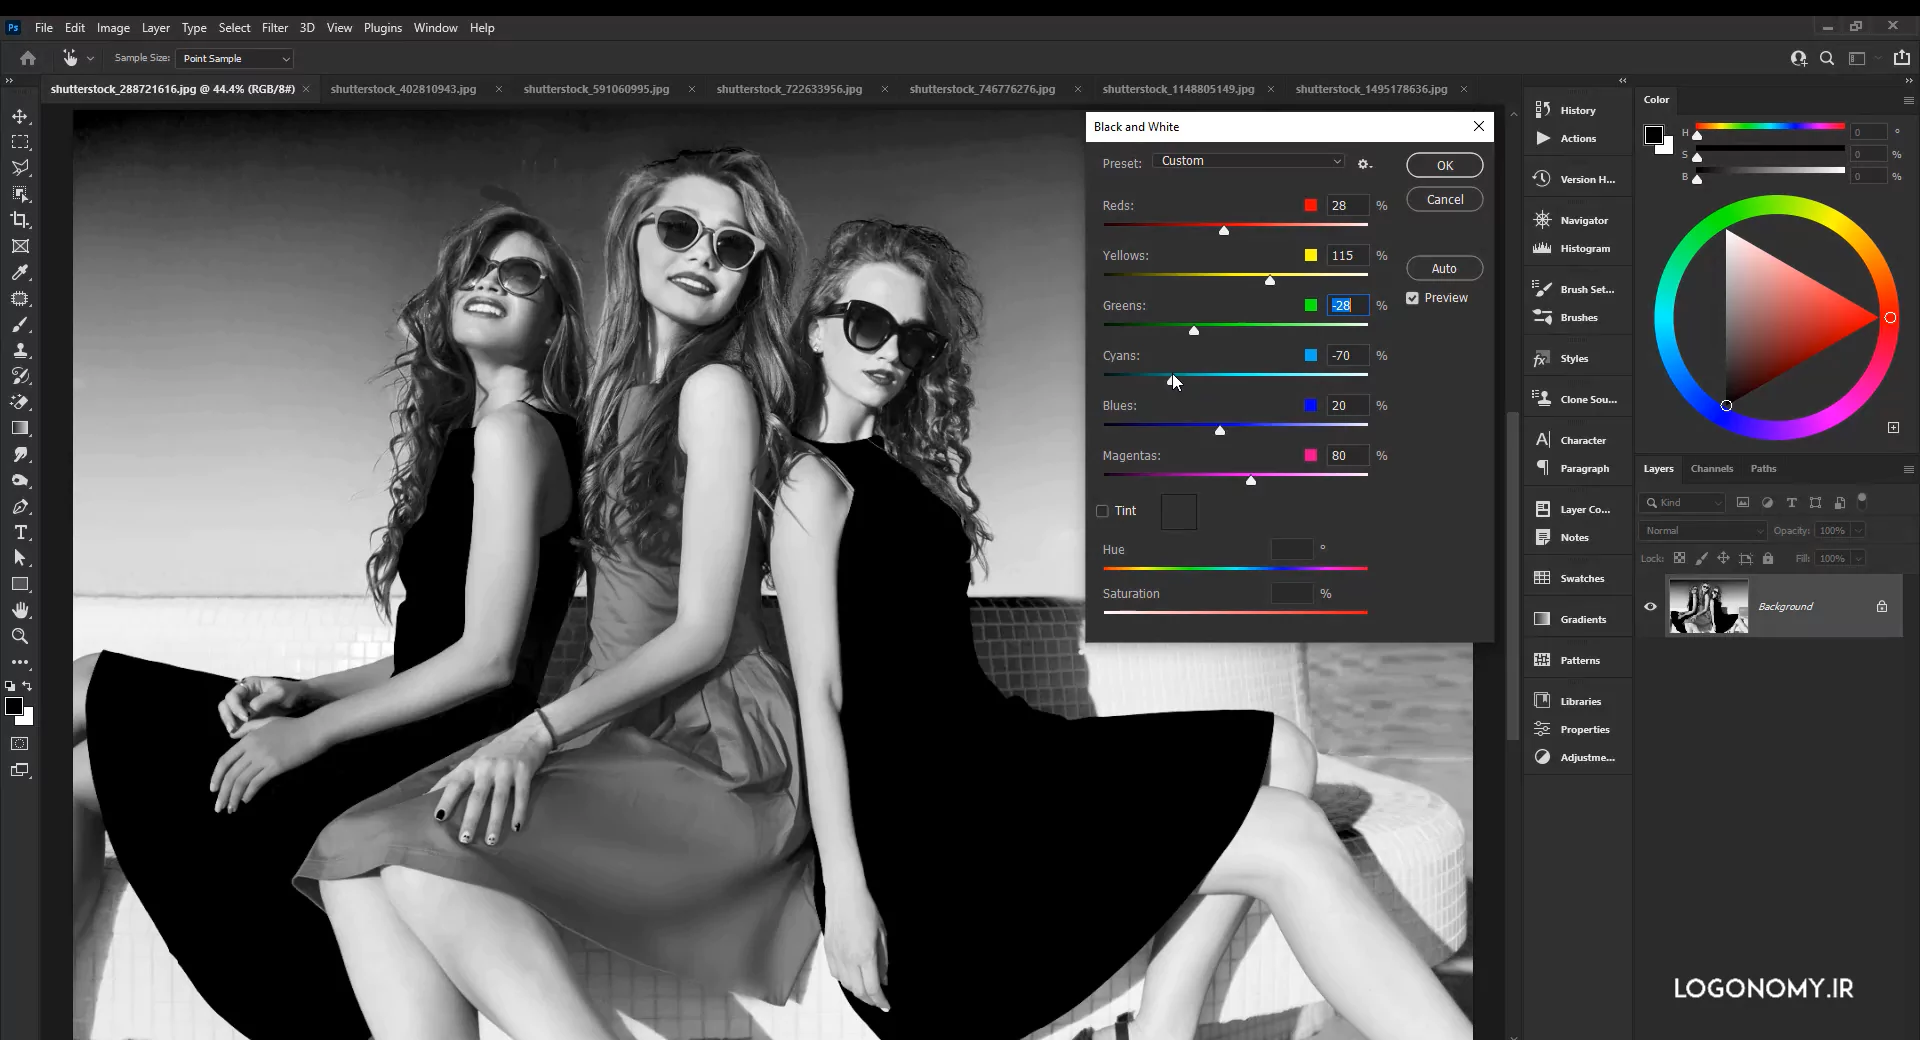 تبدیل عکس رنگی به سیاه و سفید همراه با اصلاح رنگ و نور در برنامه فتوشاپ